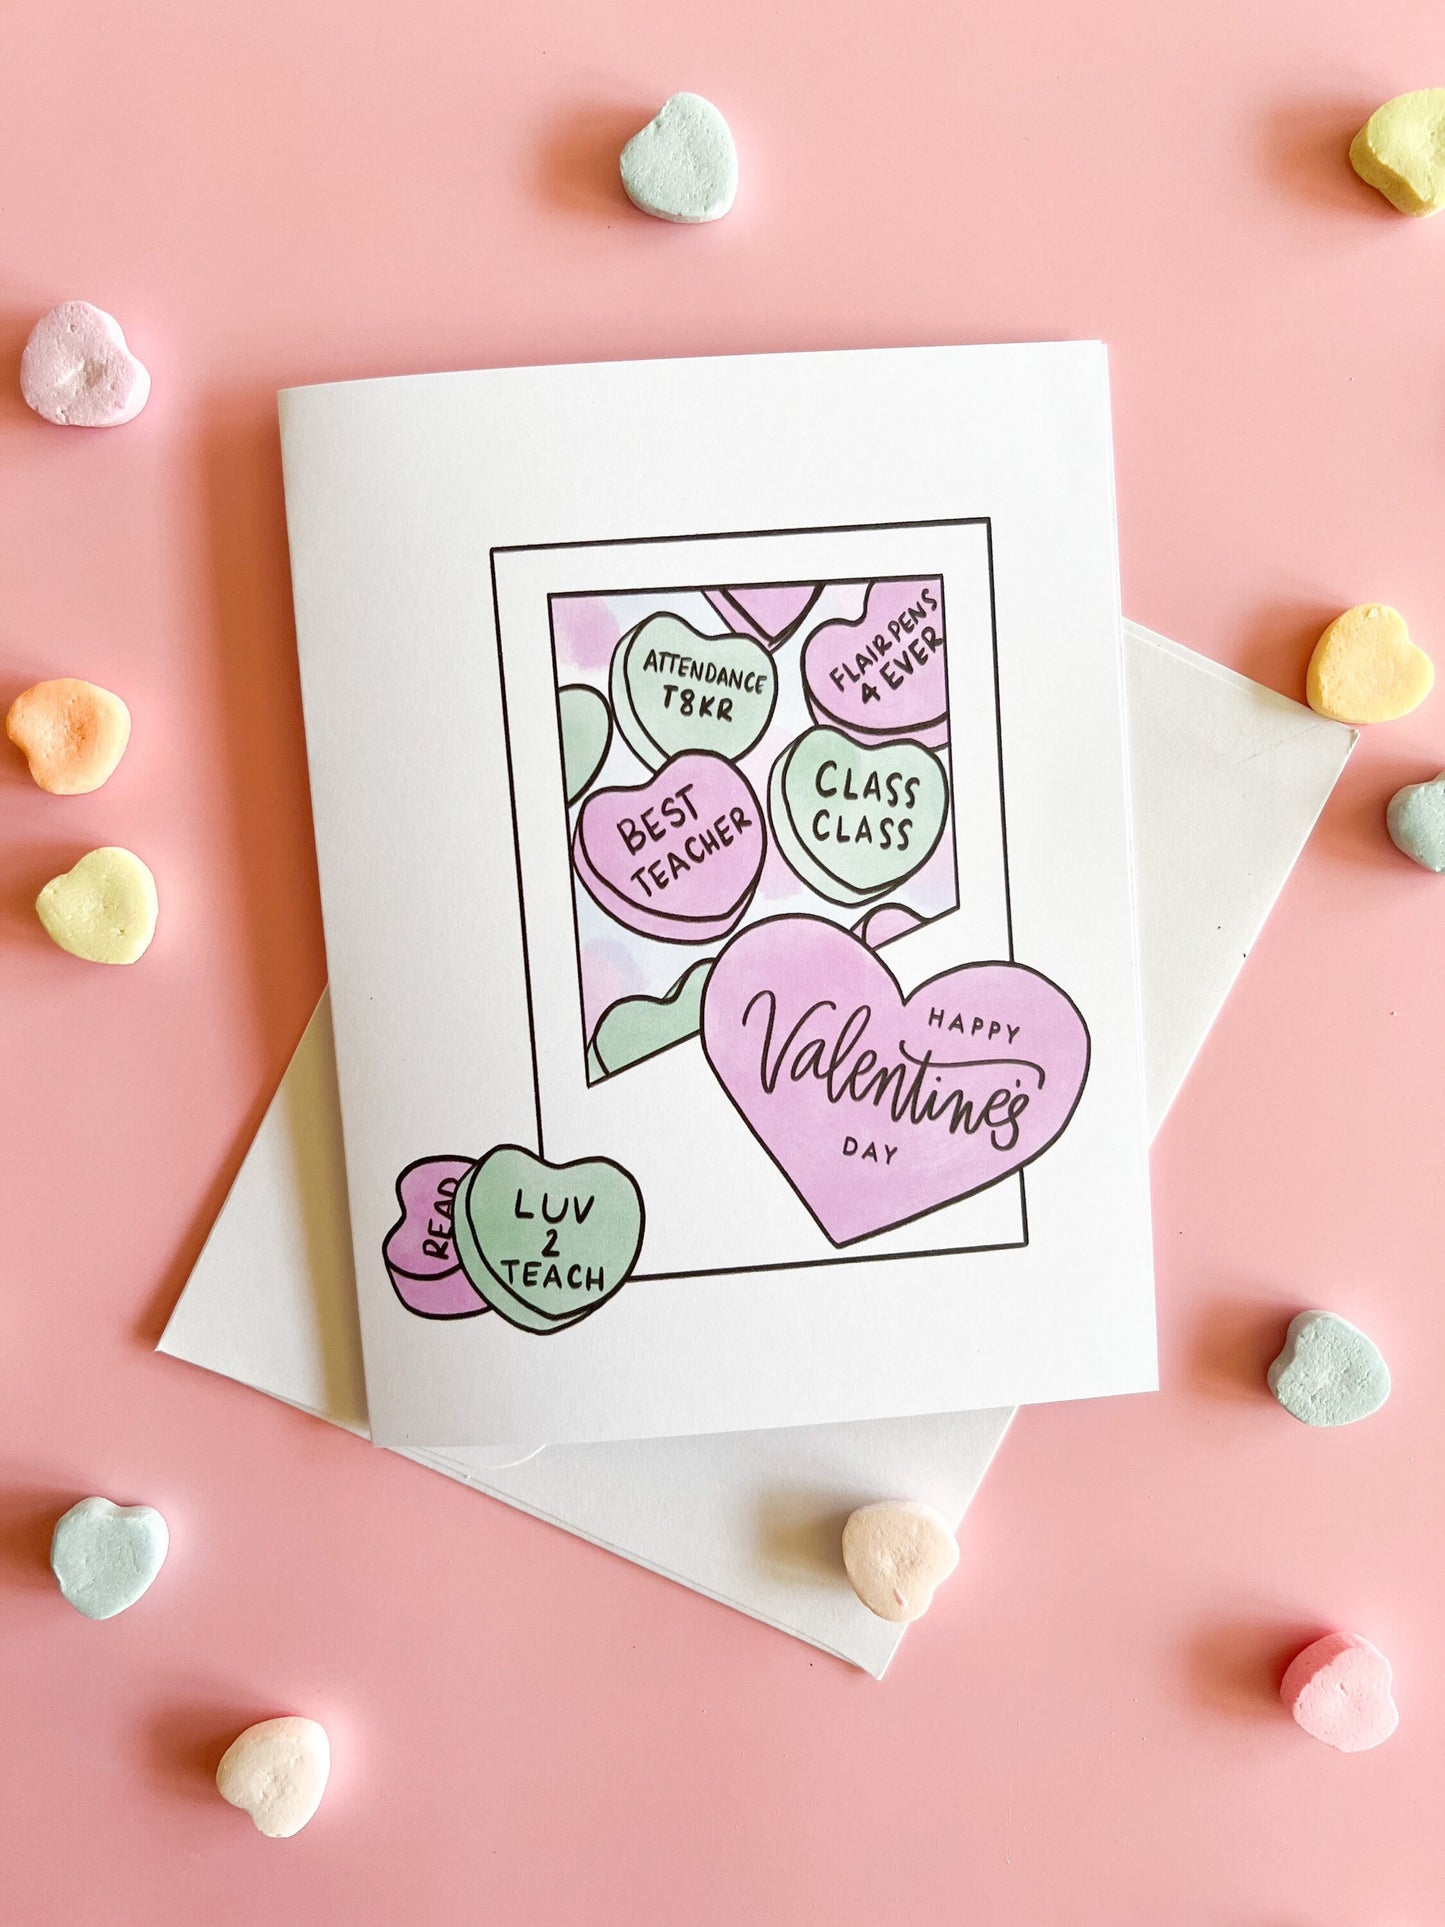 Teacher conversation hearts - Valentine’s Day card -teacher gift